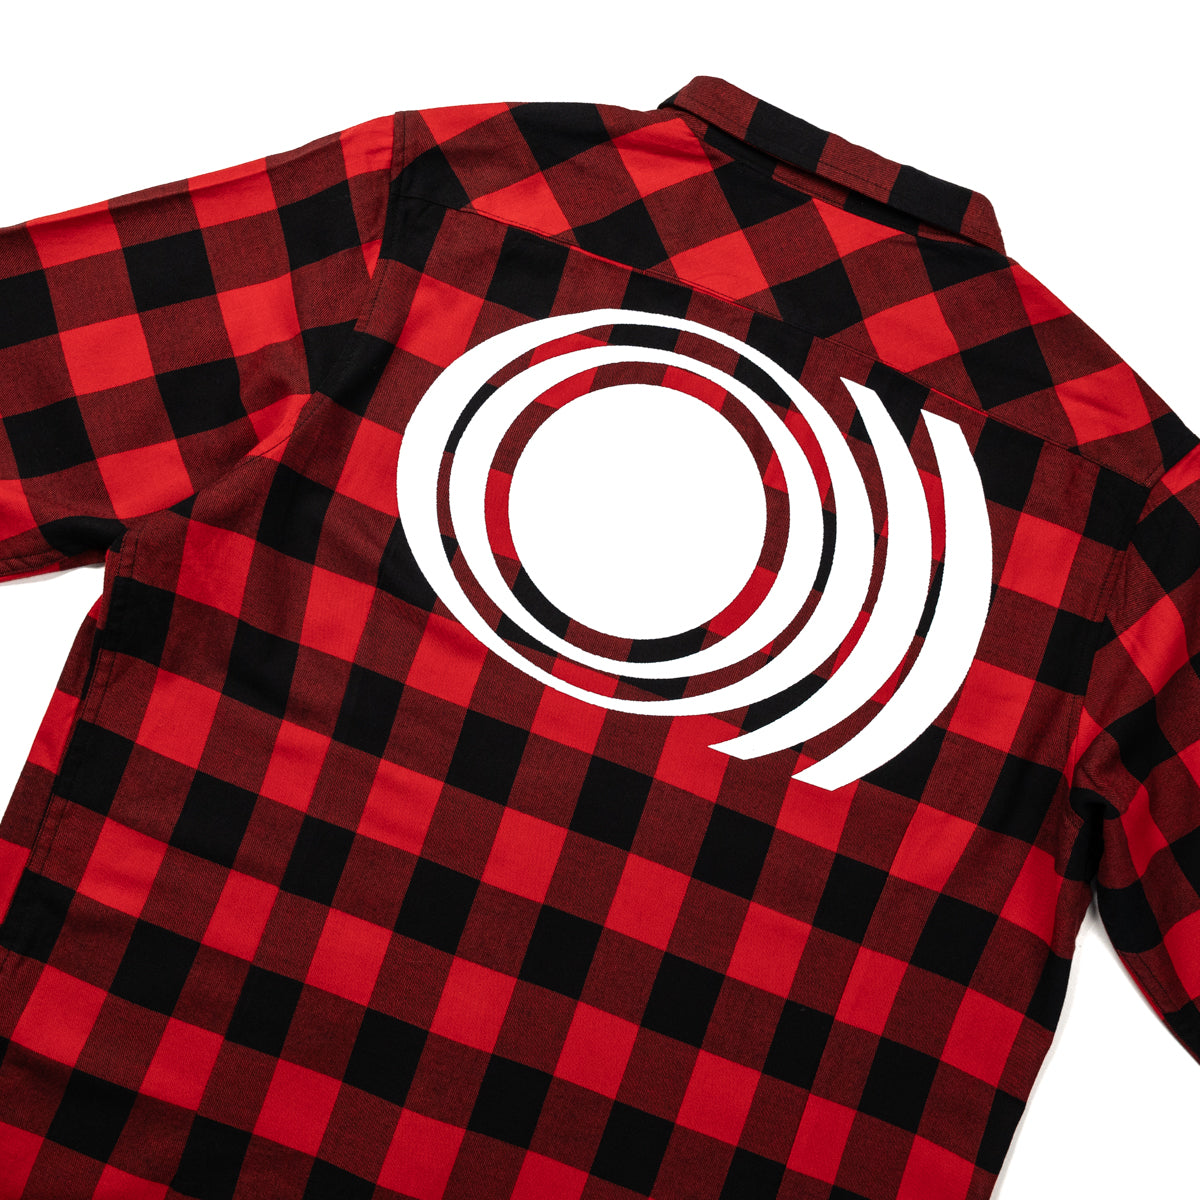 SUNN O))) "Logo" Flannel Shirt